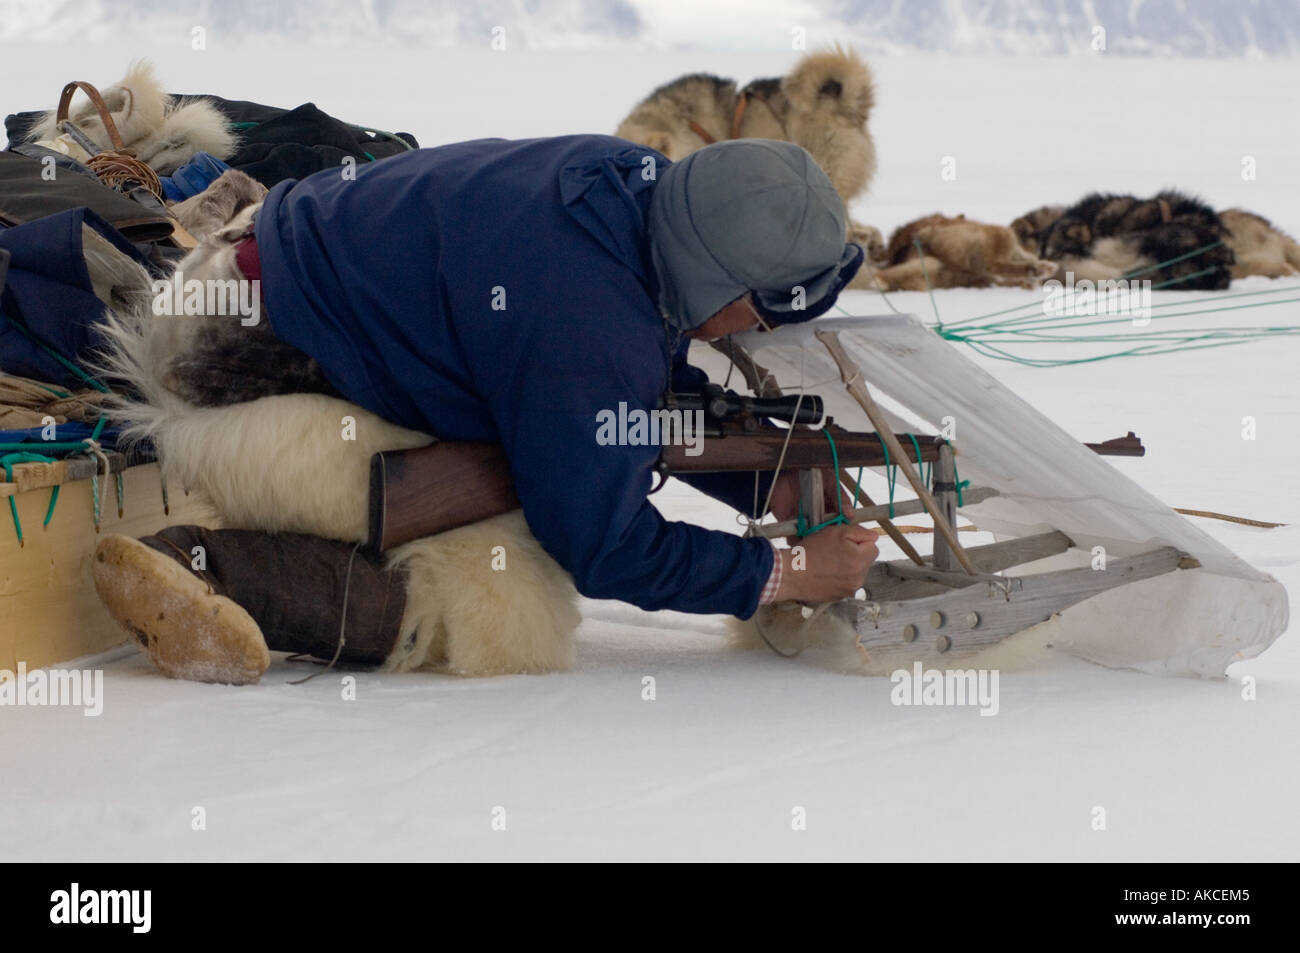 La chasse de subsistance traditionnelle des Inuits pour la chasse au phoque annelé Qaanaaq Groenland Avril 2006 Banque D'Images